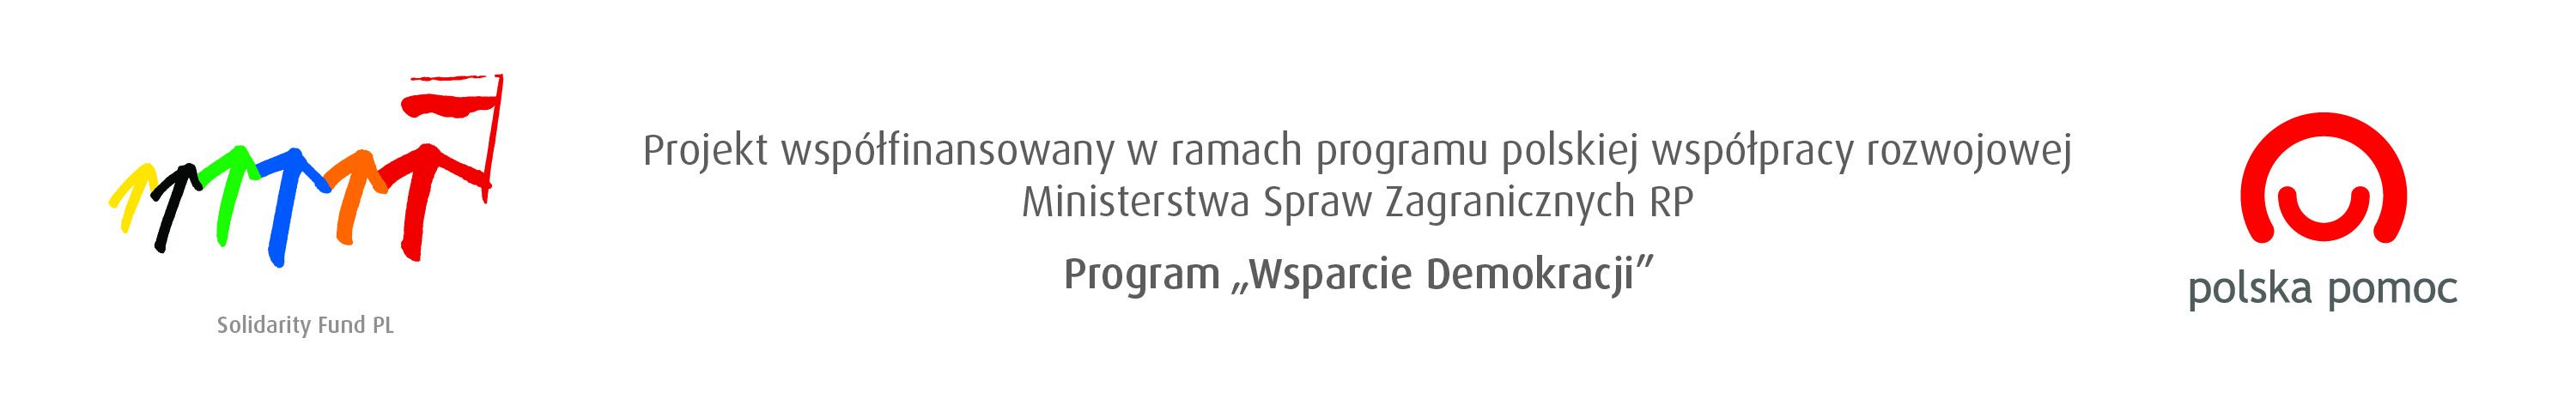 Projekt  jest  wspfinansowany  ze  rodkw programu  Wsparcie  Demokracji  finansowanego  w  ramach  programu  polskiej  wsppracy  rozwojowej Ministerstwa  Spraw  Zagranicznych  RP  w  2013  r.